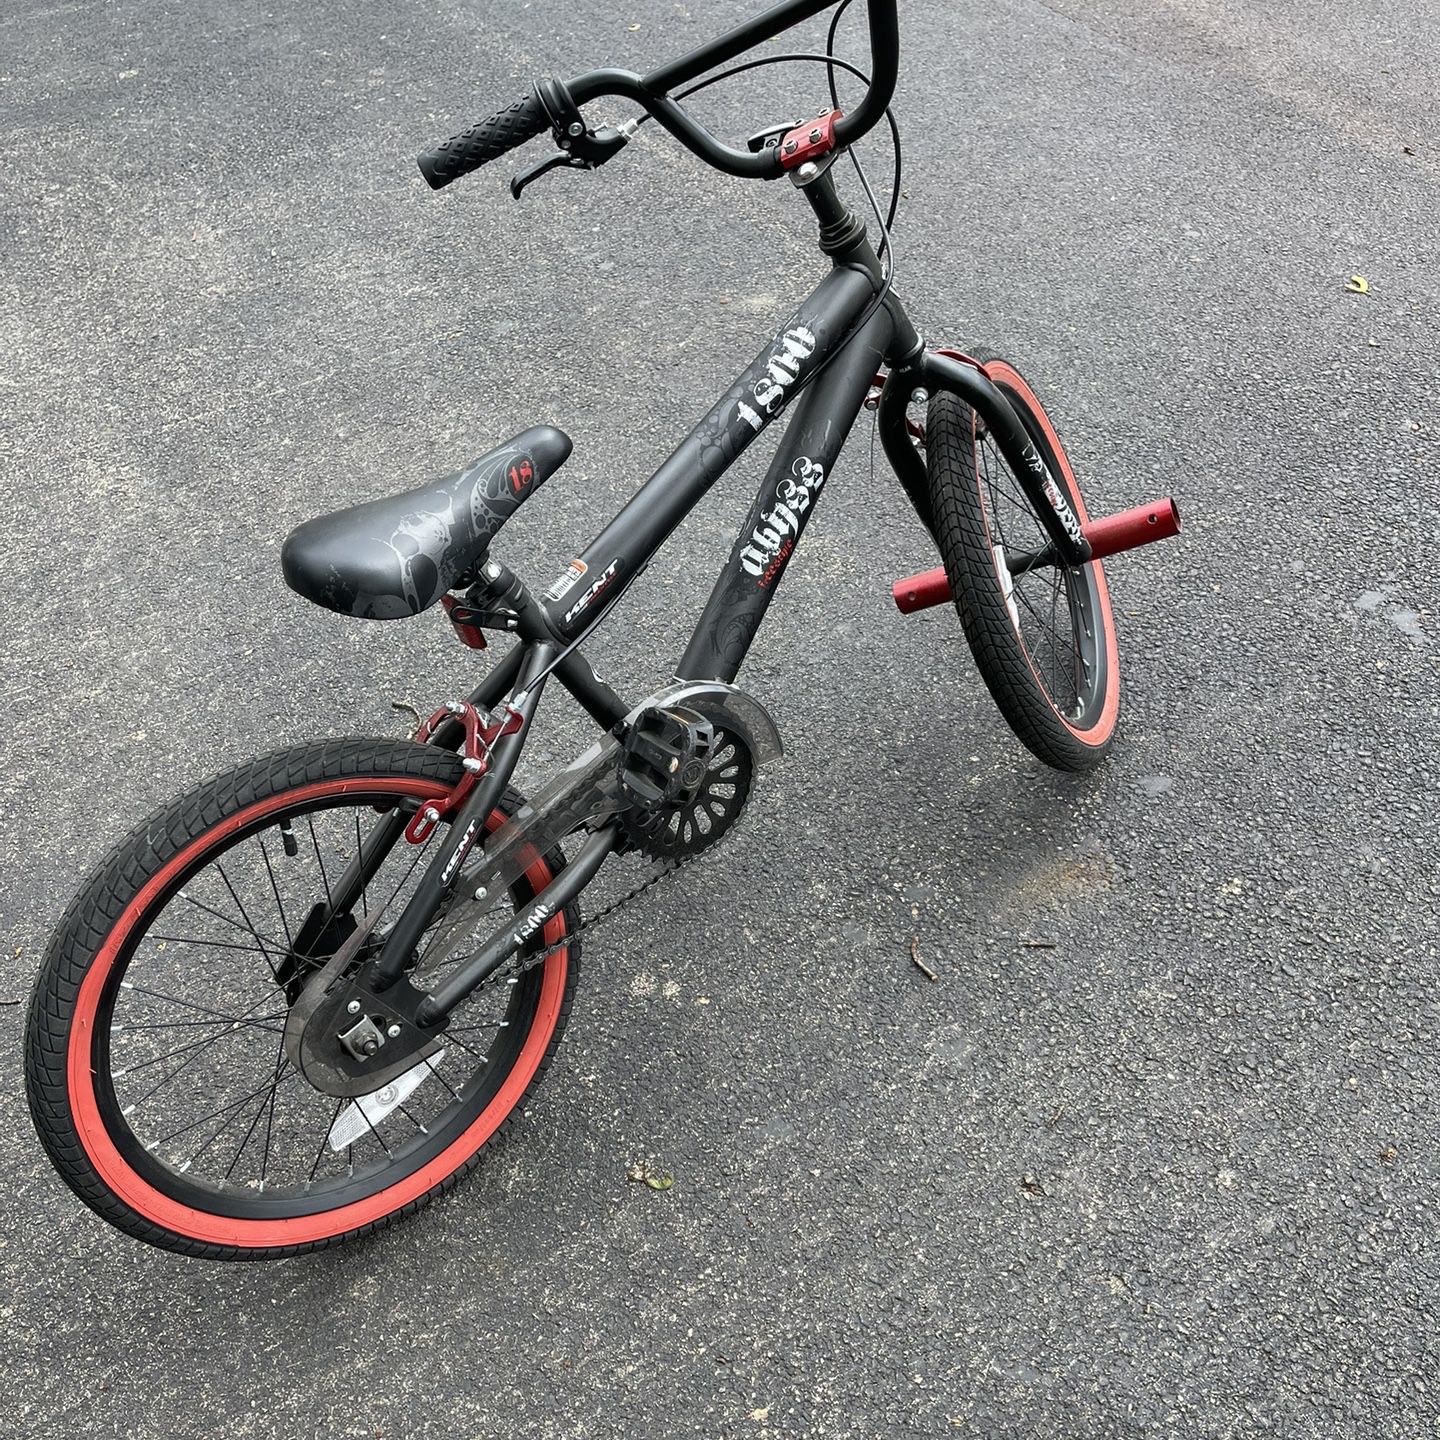 Boys 18 Bike Adjustable Seat